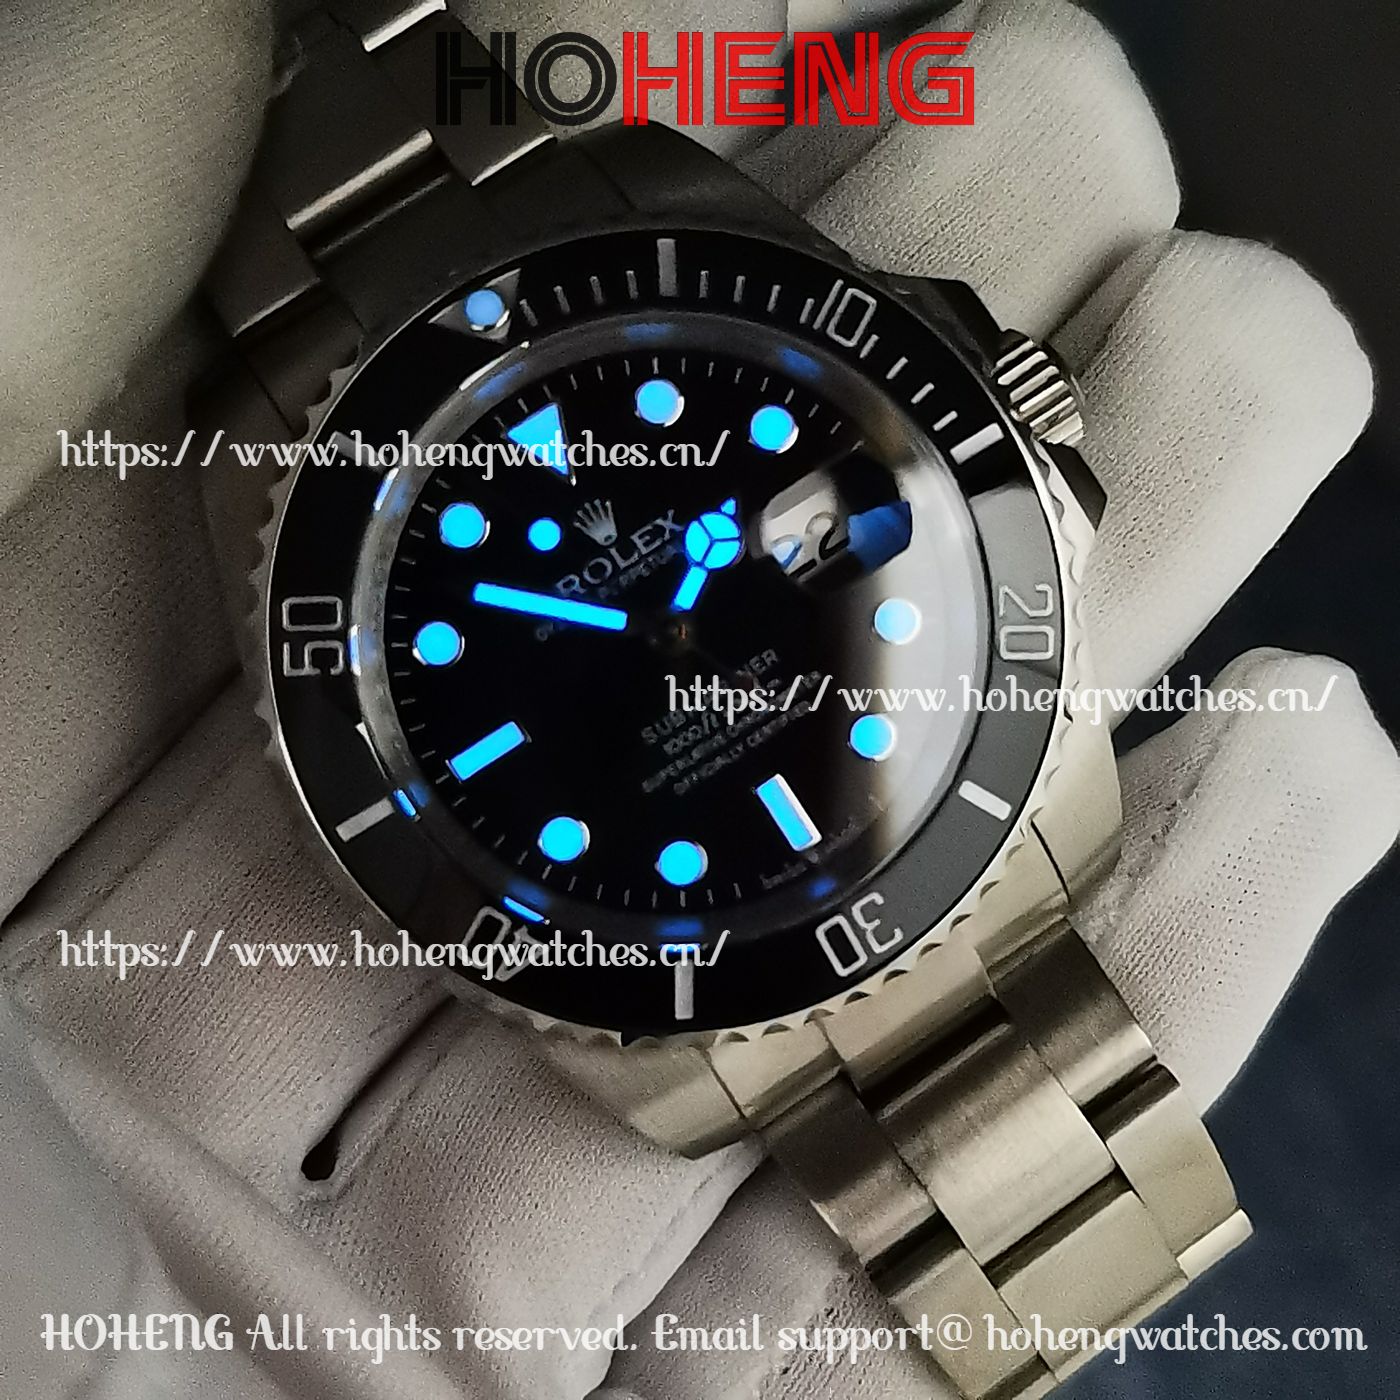 Rolex Submariner 126610 Black Dial